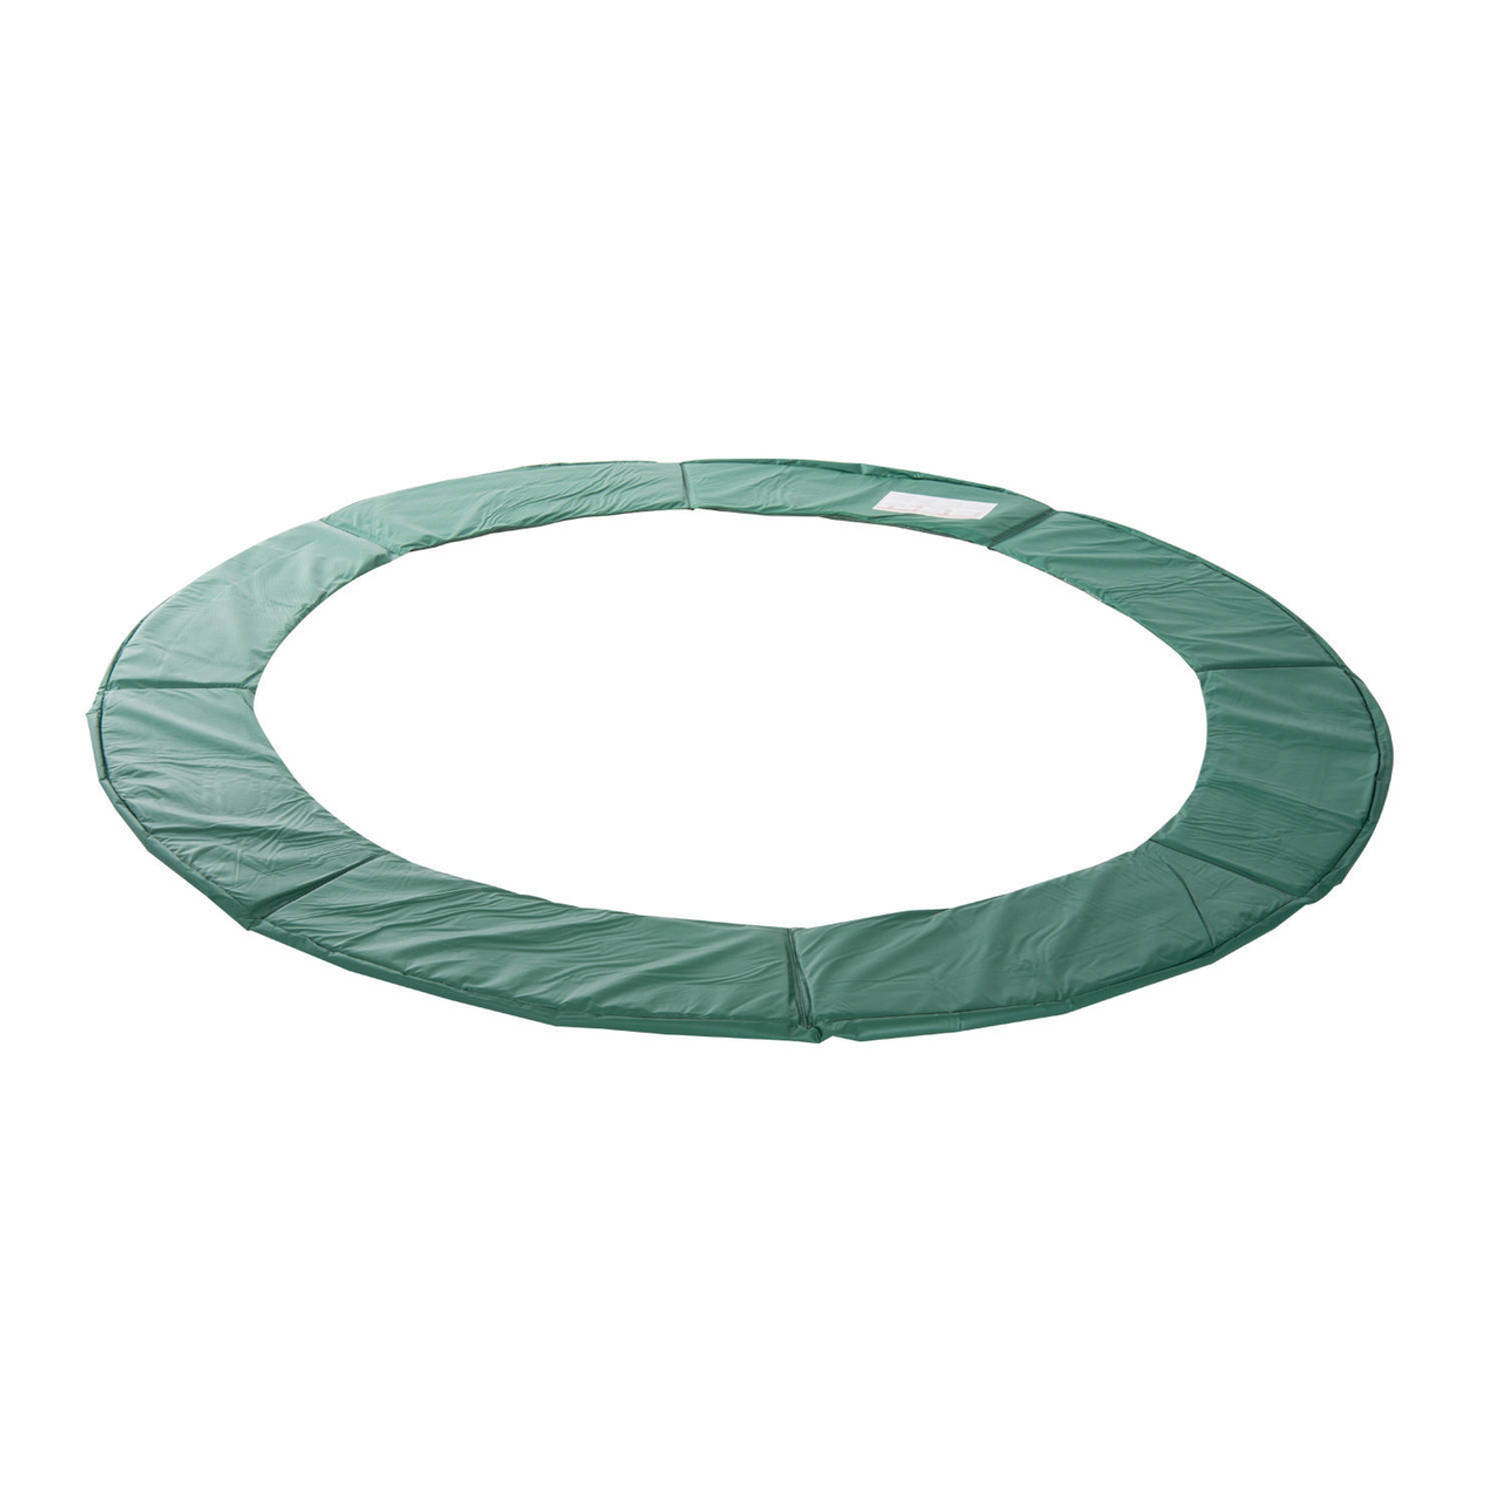 Trampoline rand afdekking - Trampoline beschermrand - 366 cm - Groen